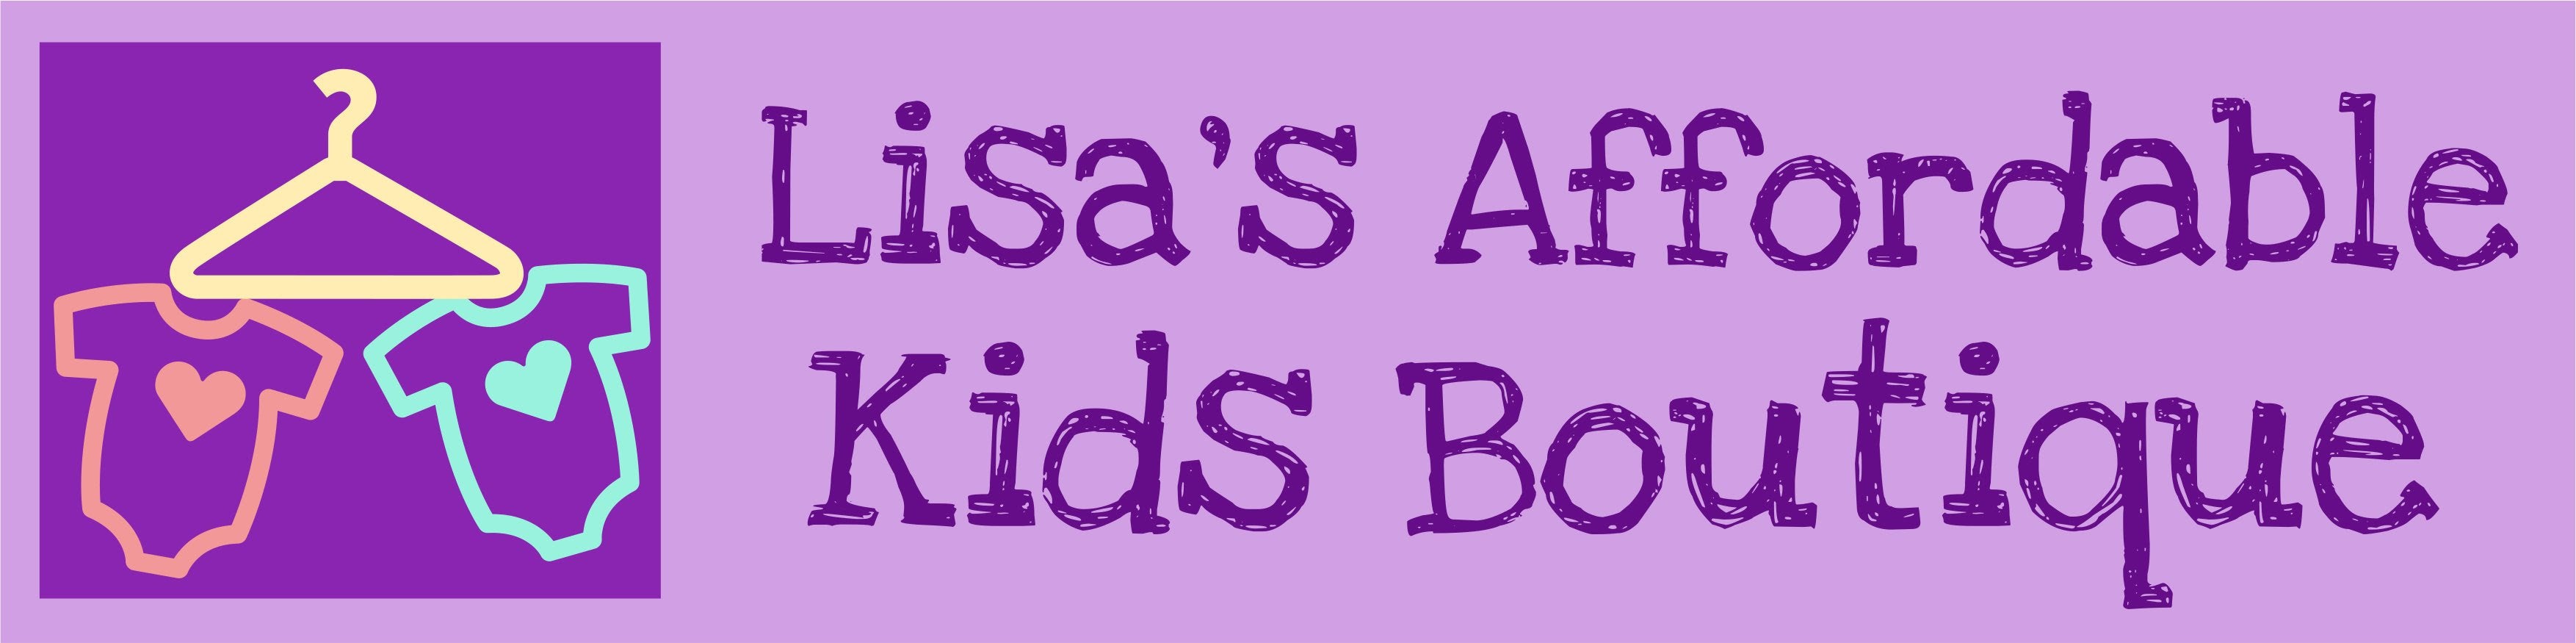 Lisa’s Affordable Kids Boutique 